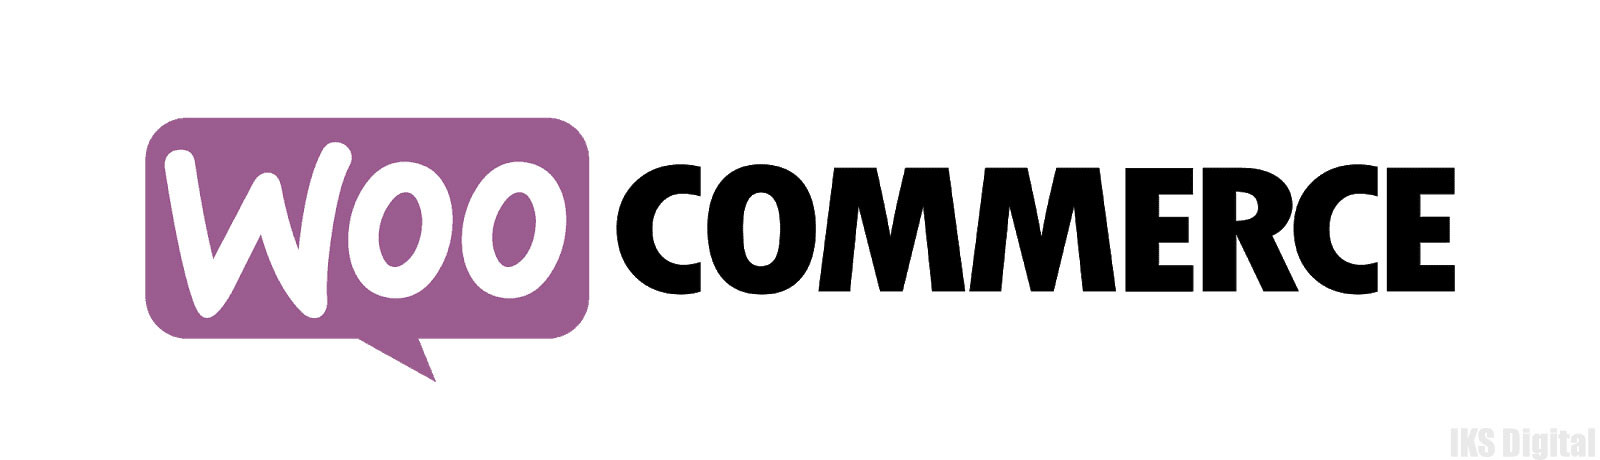 WooCommerce сравнение платформ с открытым исходным кодом 